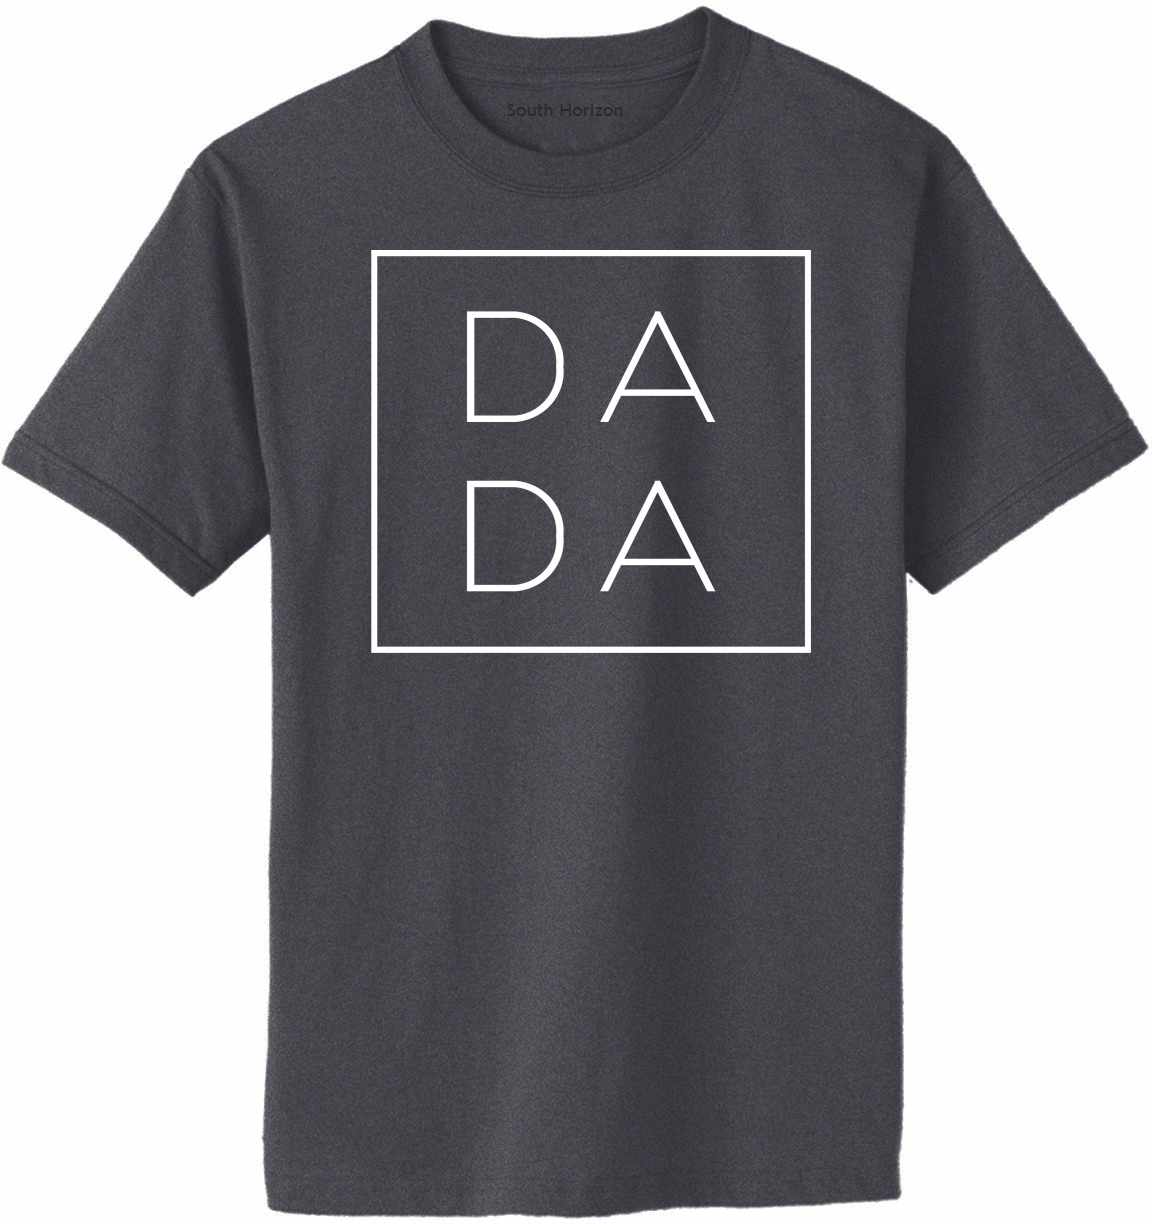 DA DA - Box on Adult T-Shirt (#1252-1)